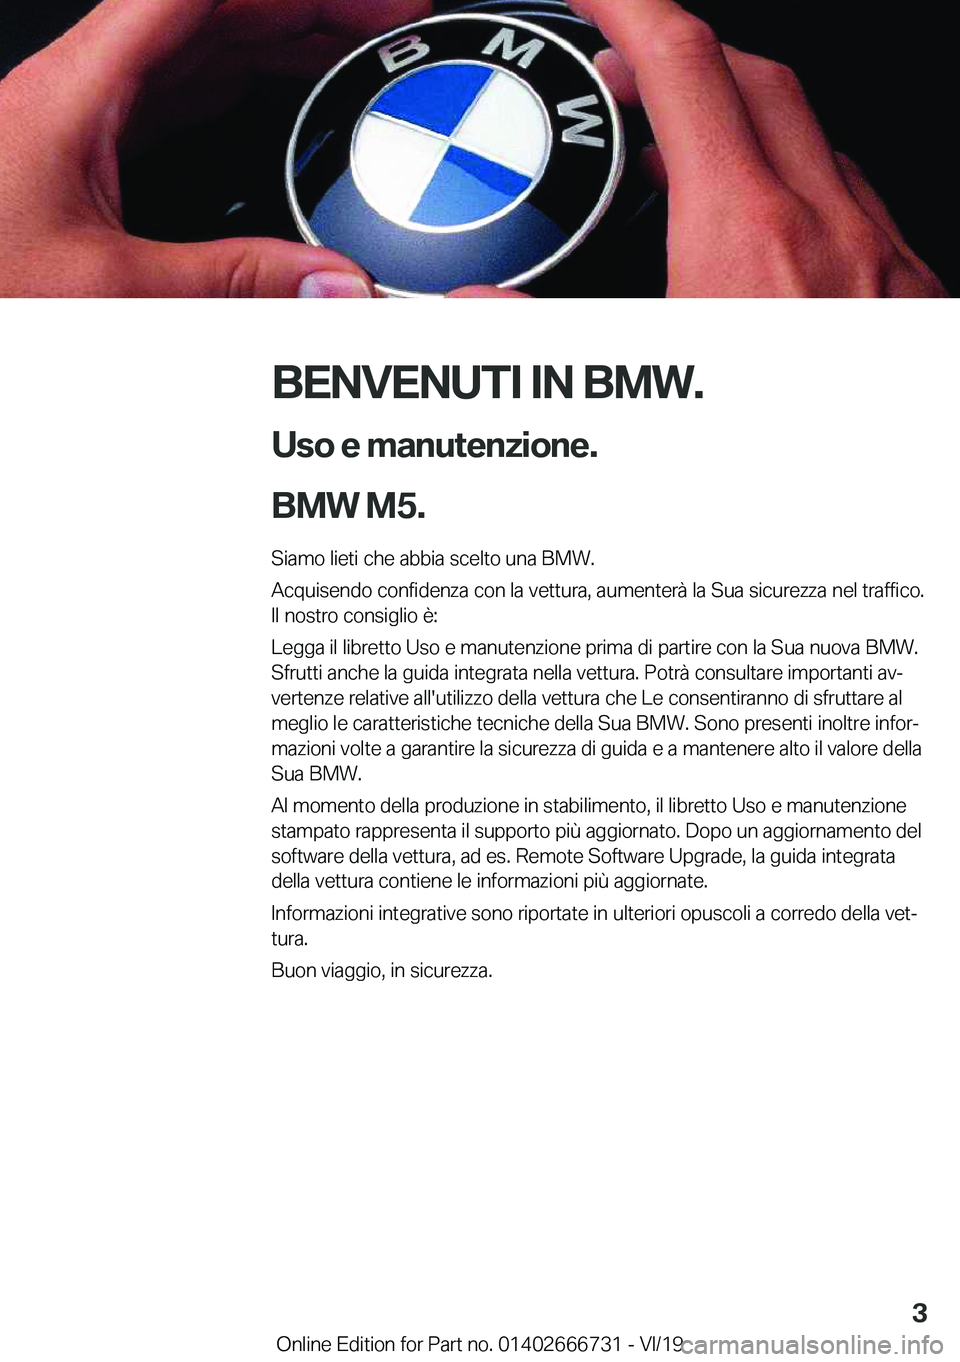 BMW M5 2020  Libretti Di Uso E manutenzione (in Italian) �B�E�N�V�E�N�U�T�I��I�N��B�M�W�.�U�s�o��e��m�a�n�u�t�e�n�z�i�o�n�e�.
�B�M�W��M�5�.
�S�i�a�m�o��l�i�e�t�i��c�h�e��a�b�b�i�a��s�c�e�l�t�o��u�n�a��B�M�W�.
�A�c�q�u�i�s�e�n�d�o��c�o�n�f�i�d�e�